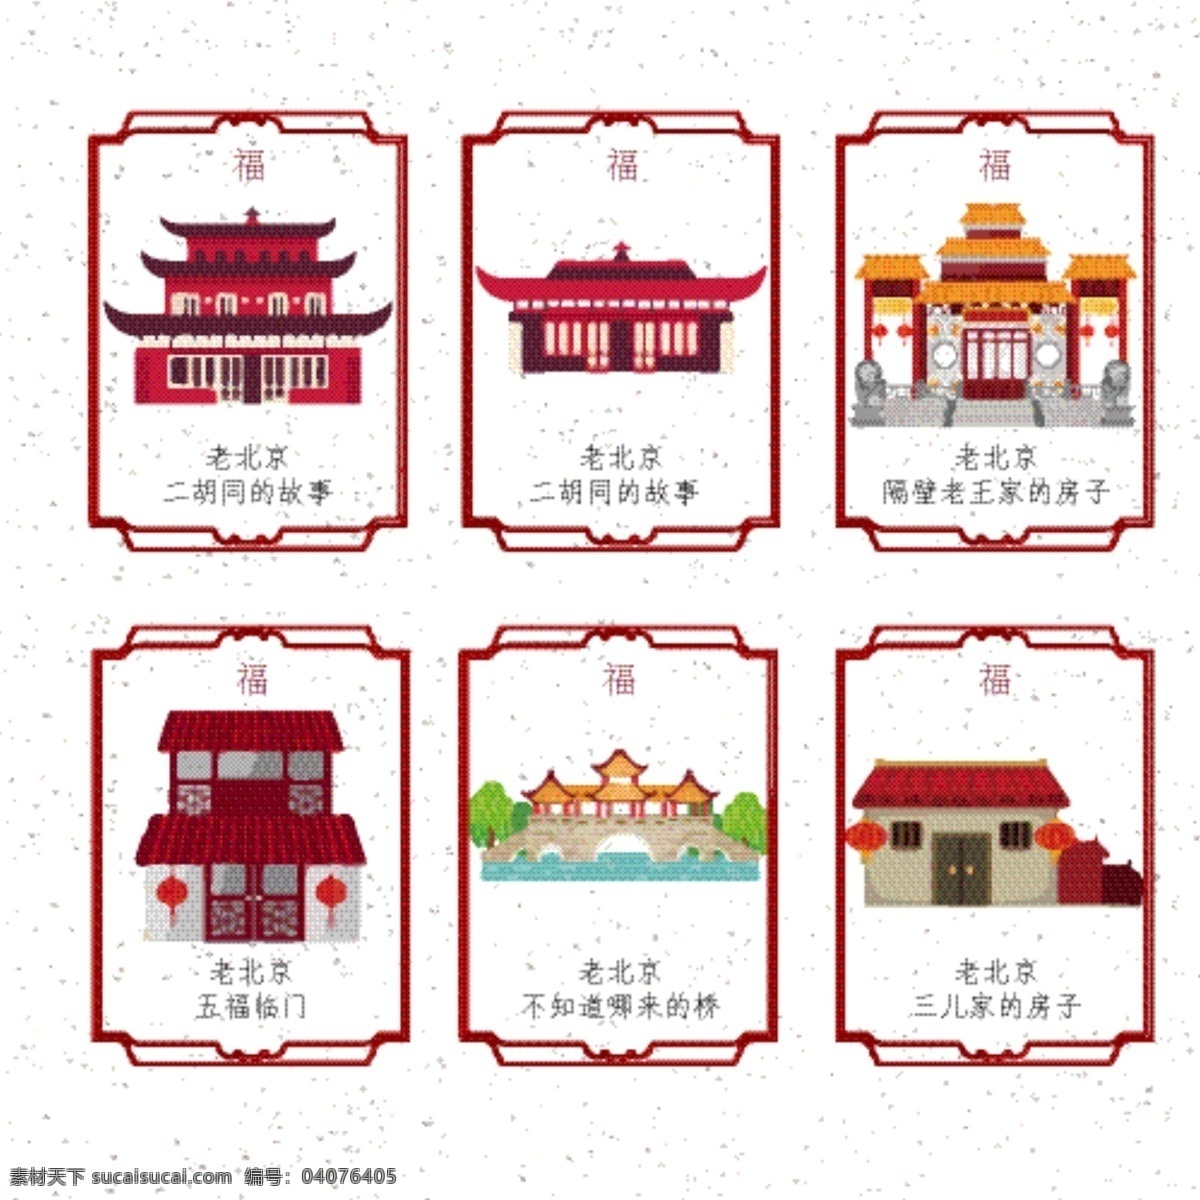 2018 新春 中国 元素 标 2018新春 标签 春节 红房子 建筑 老北京 中国风